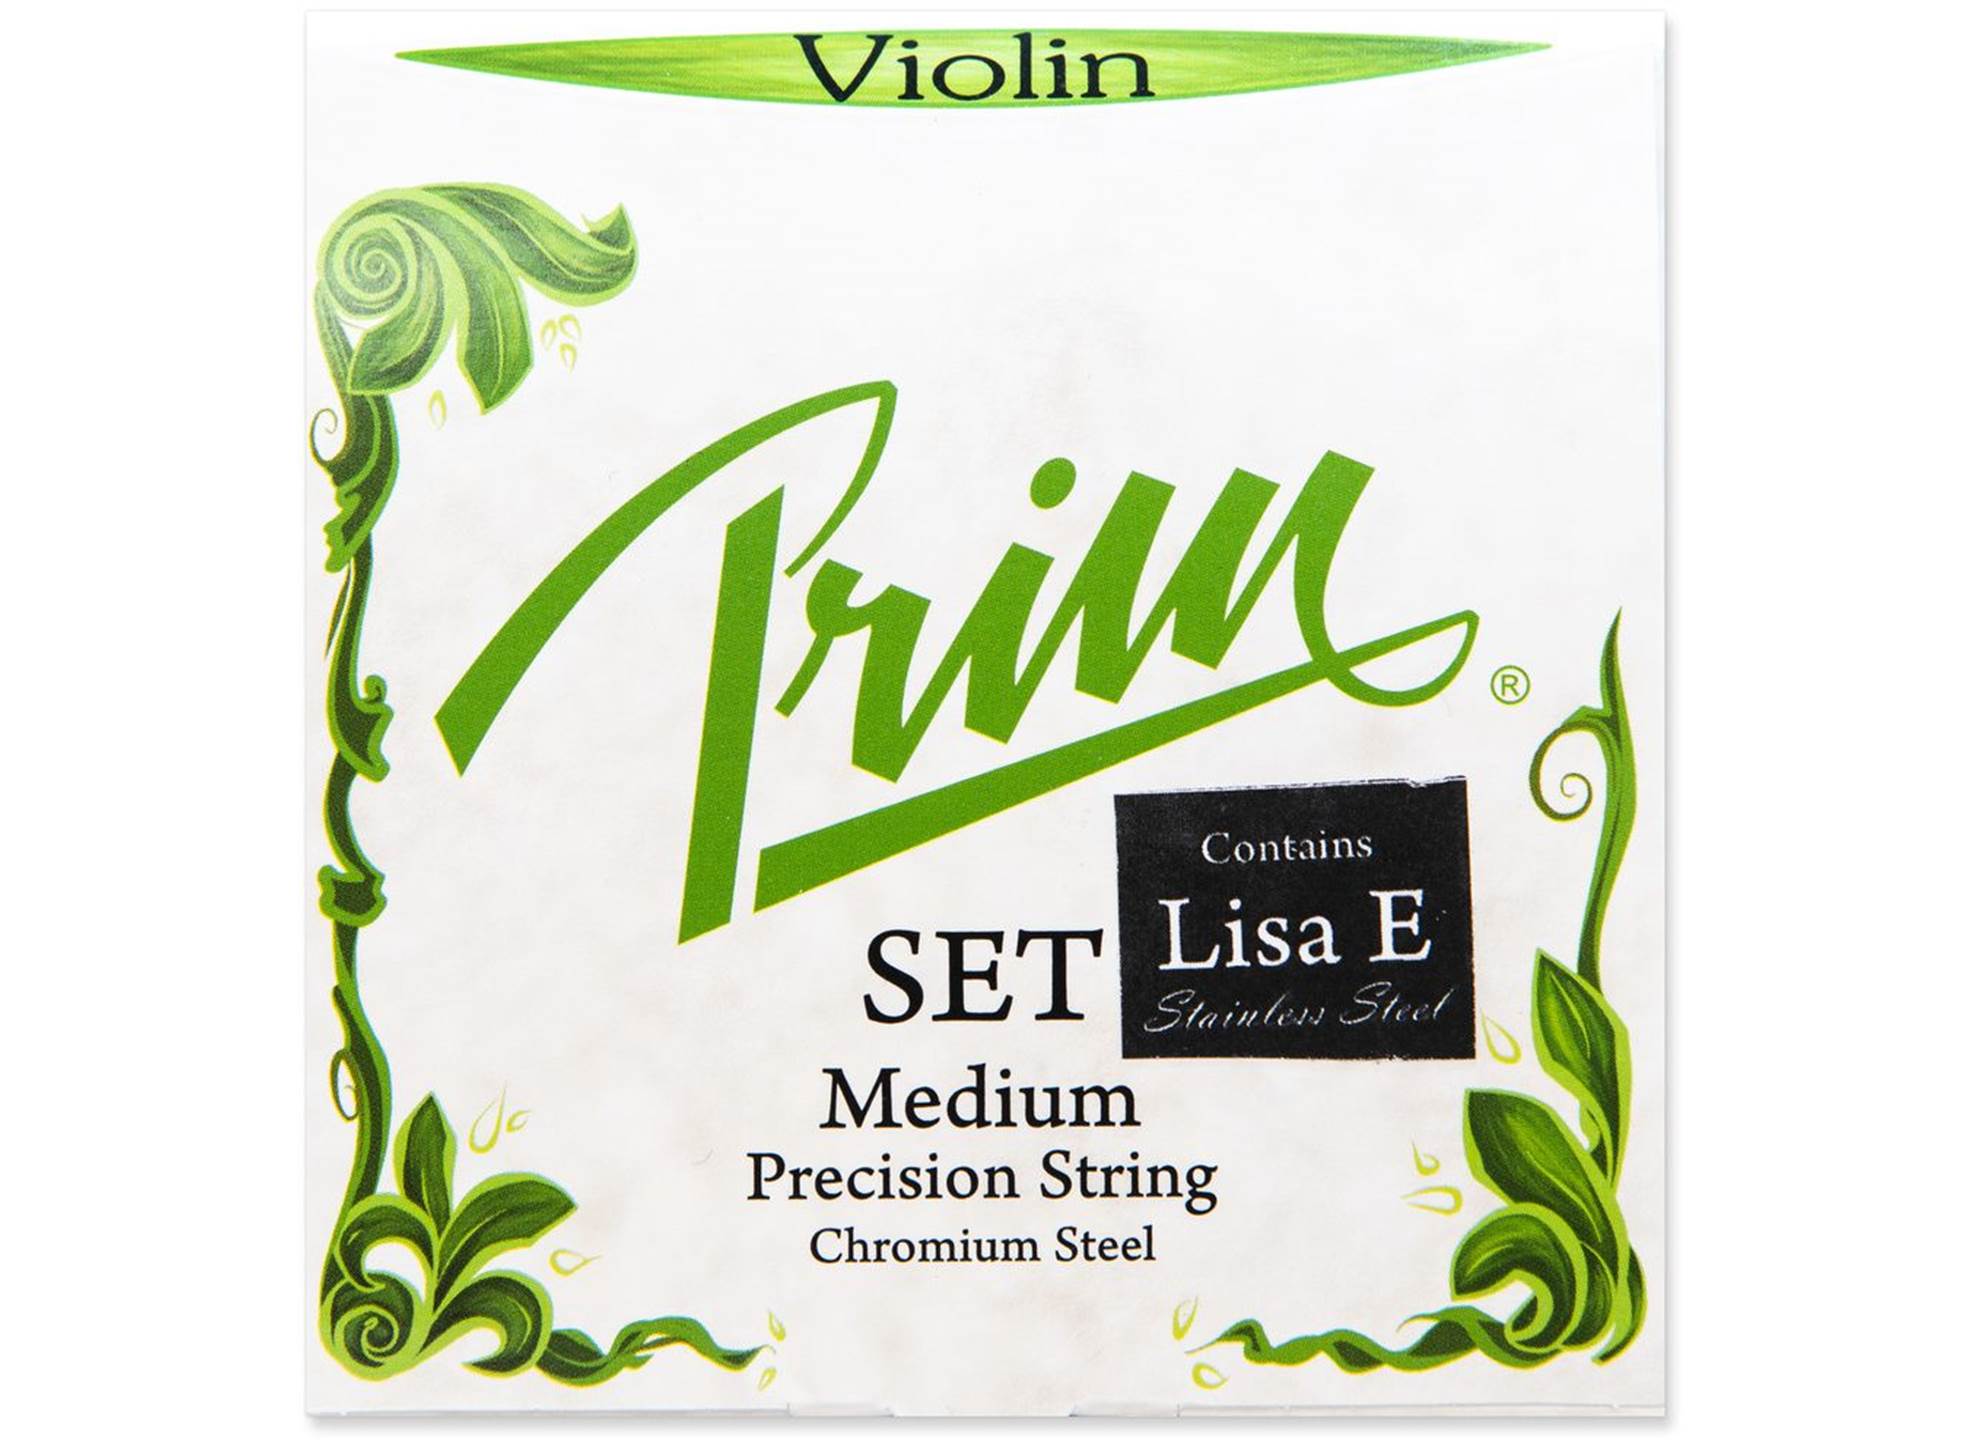 Violin Set Medium with Lisa E